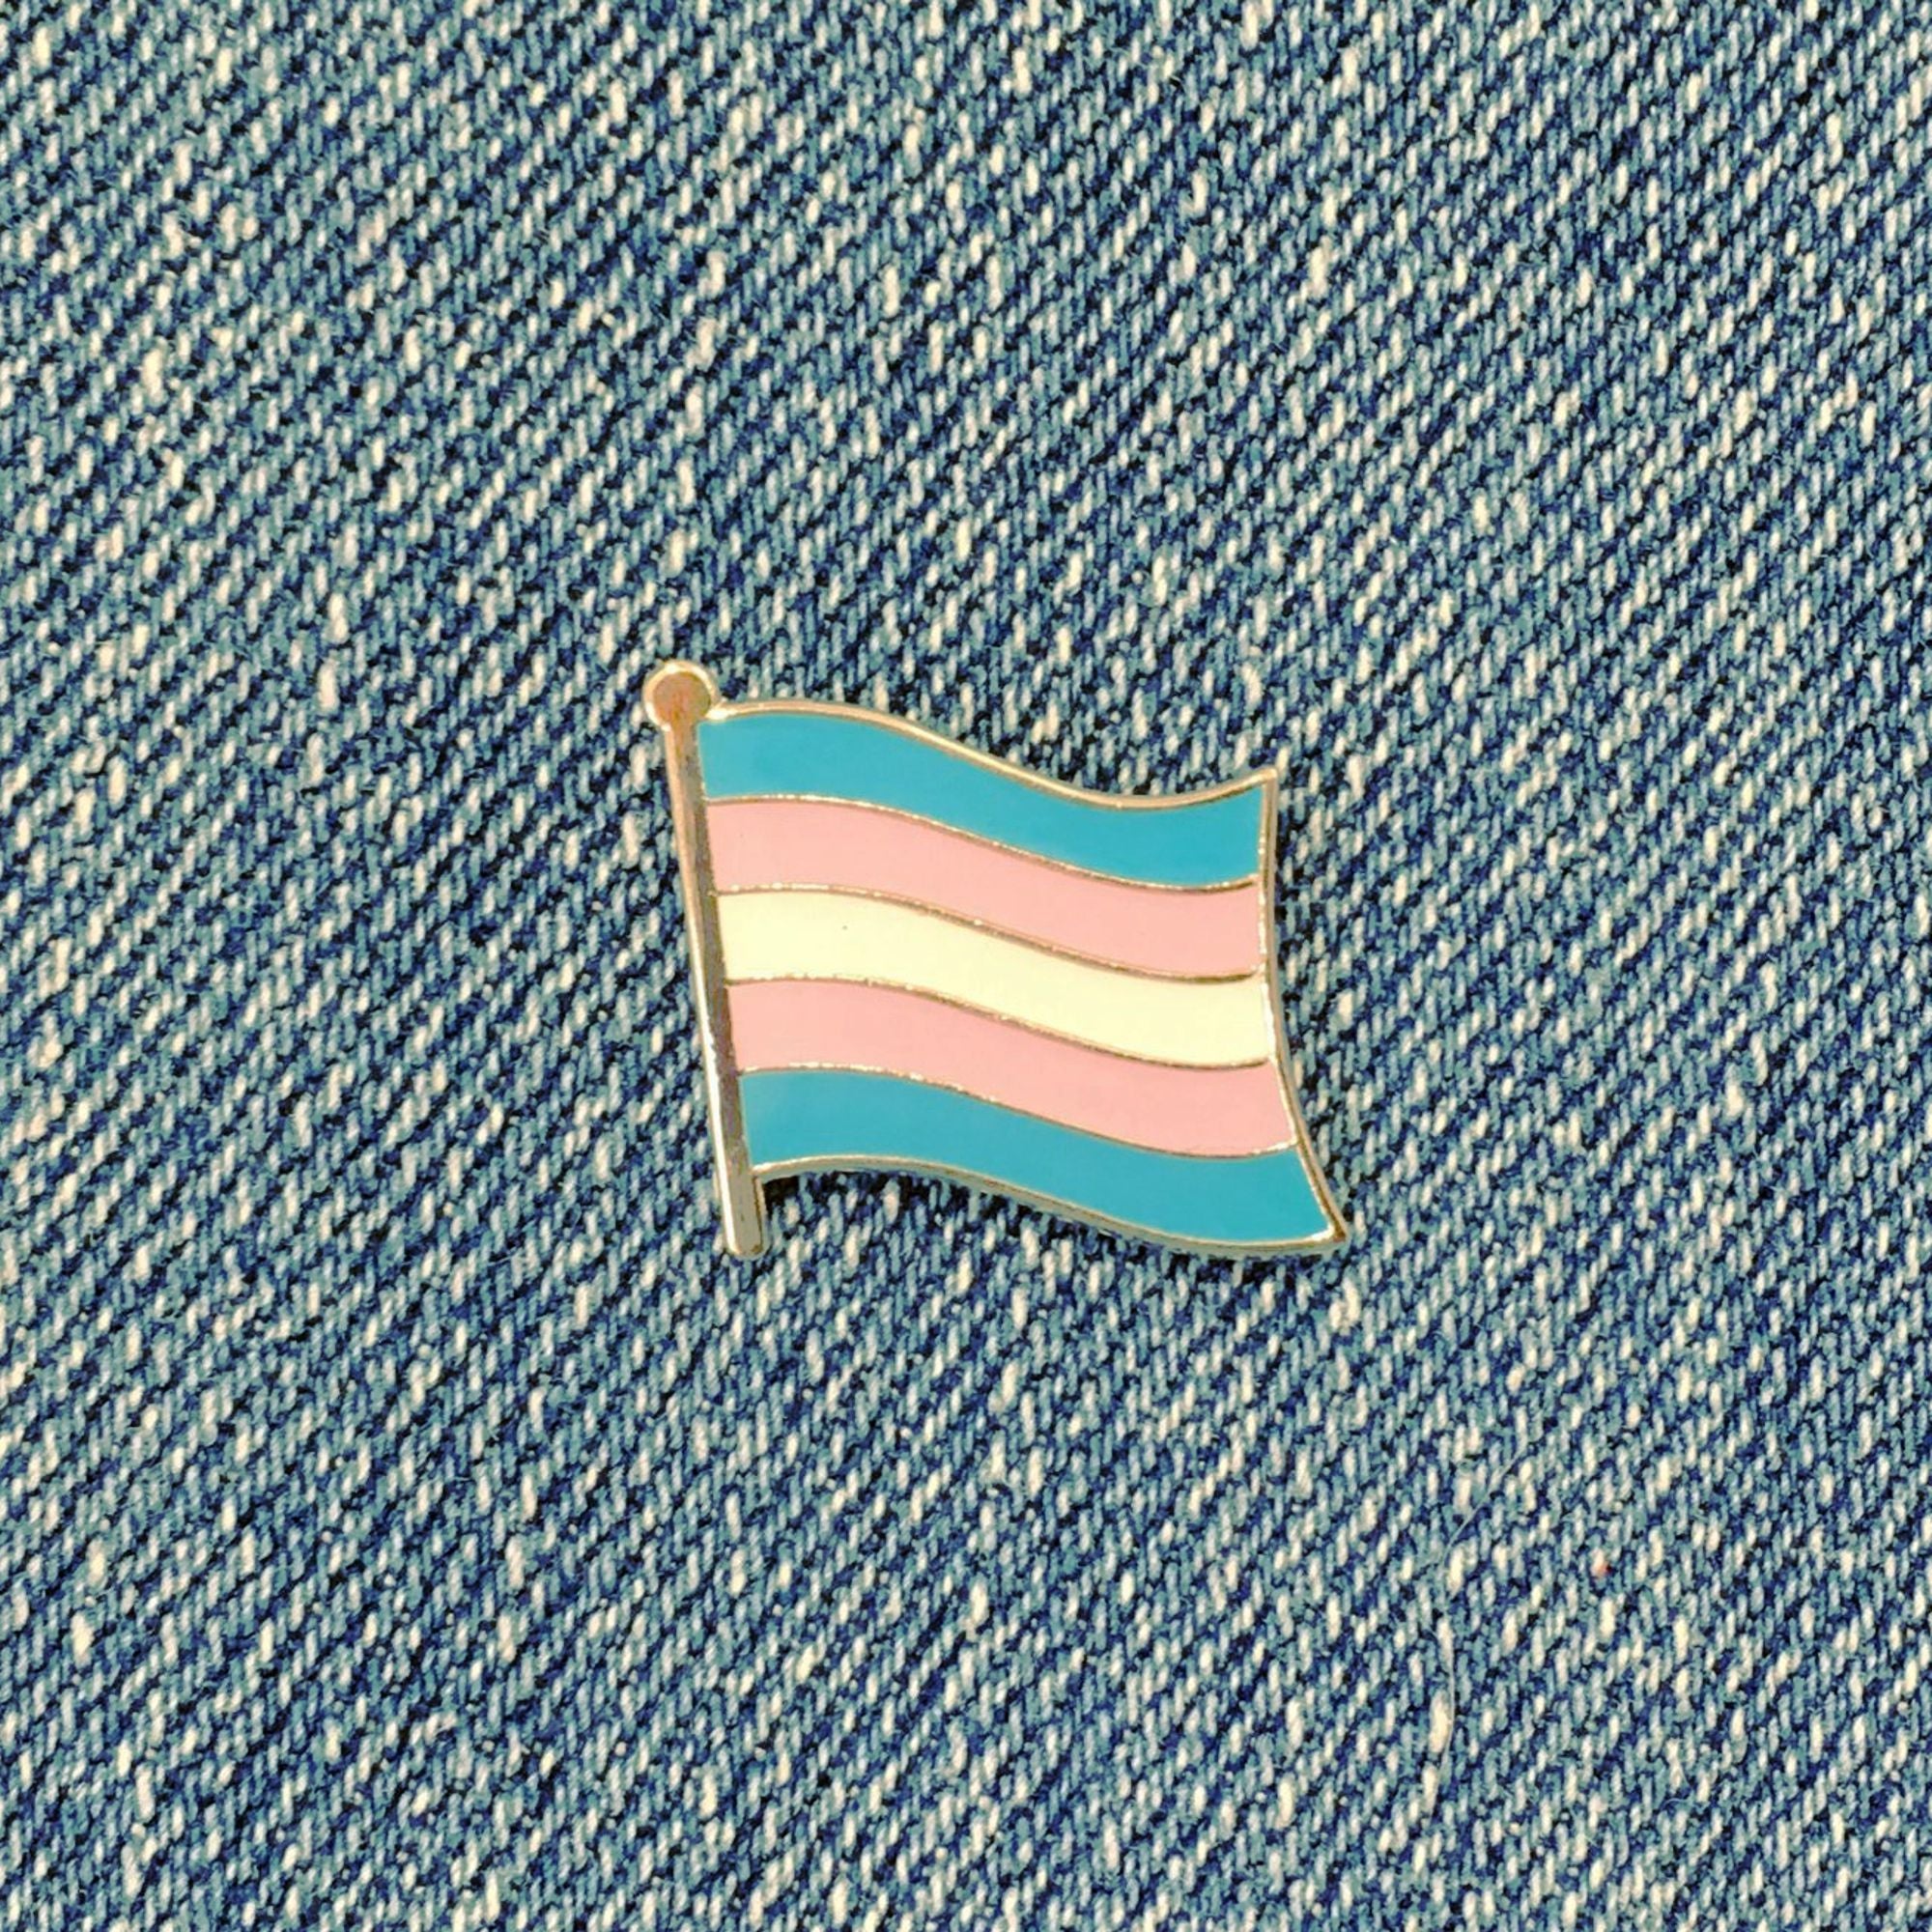 lgbt pride flag pins transgender trans